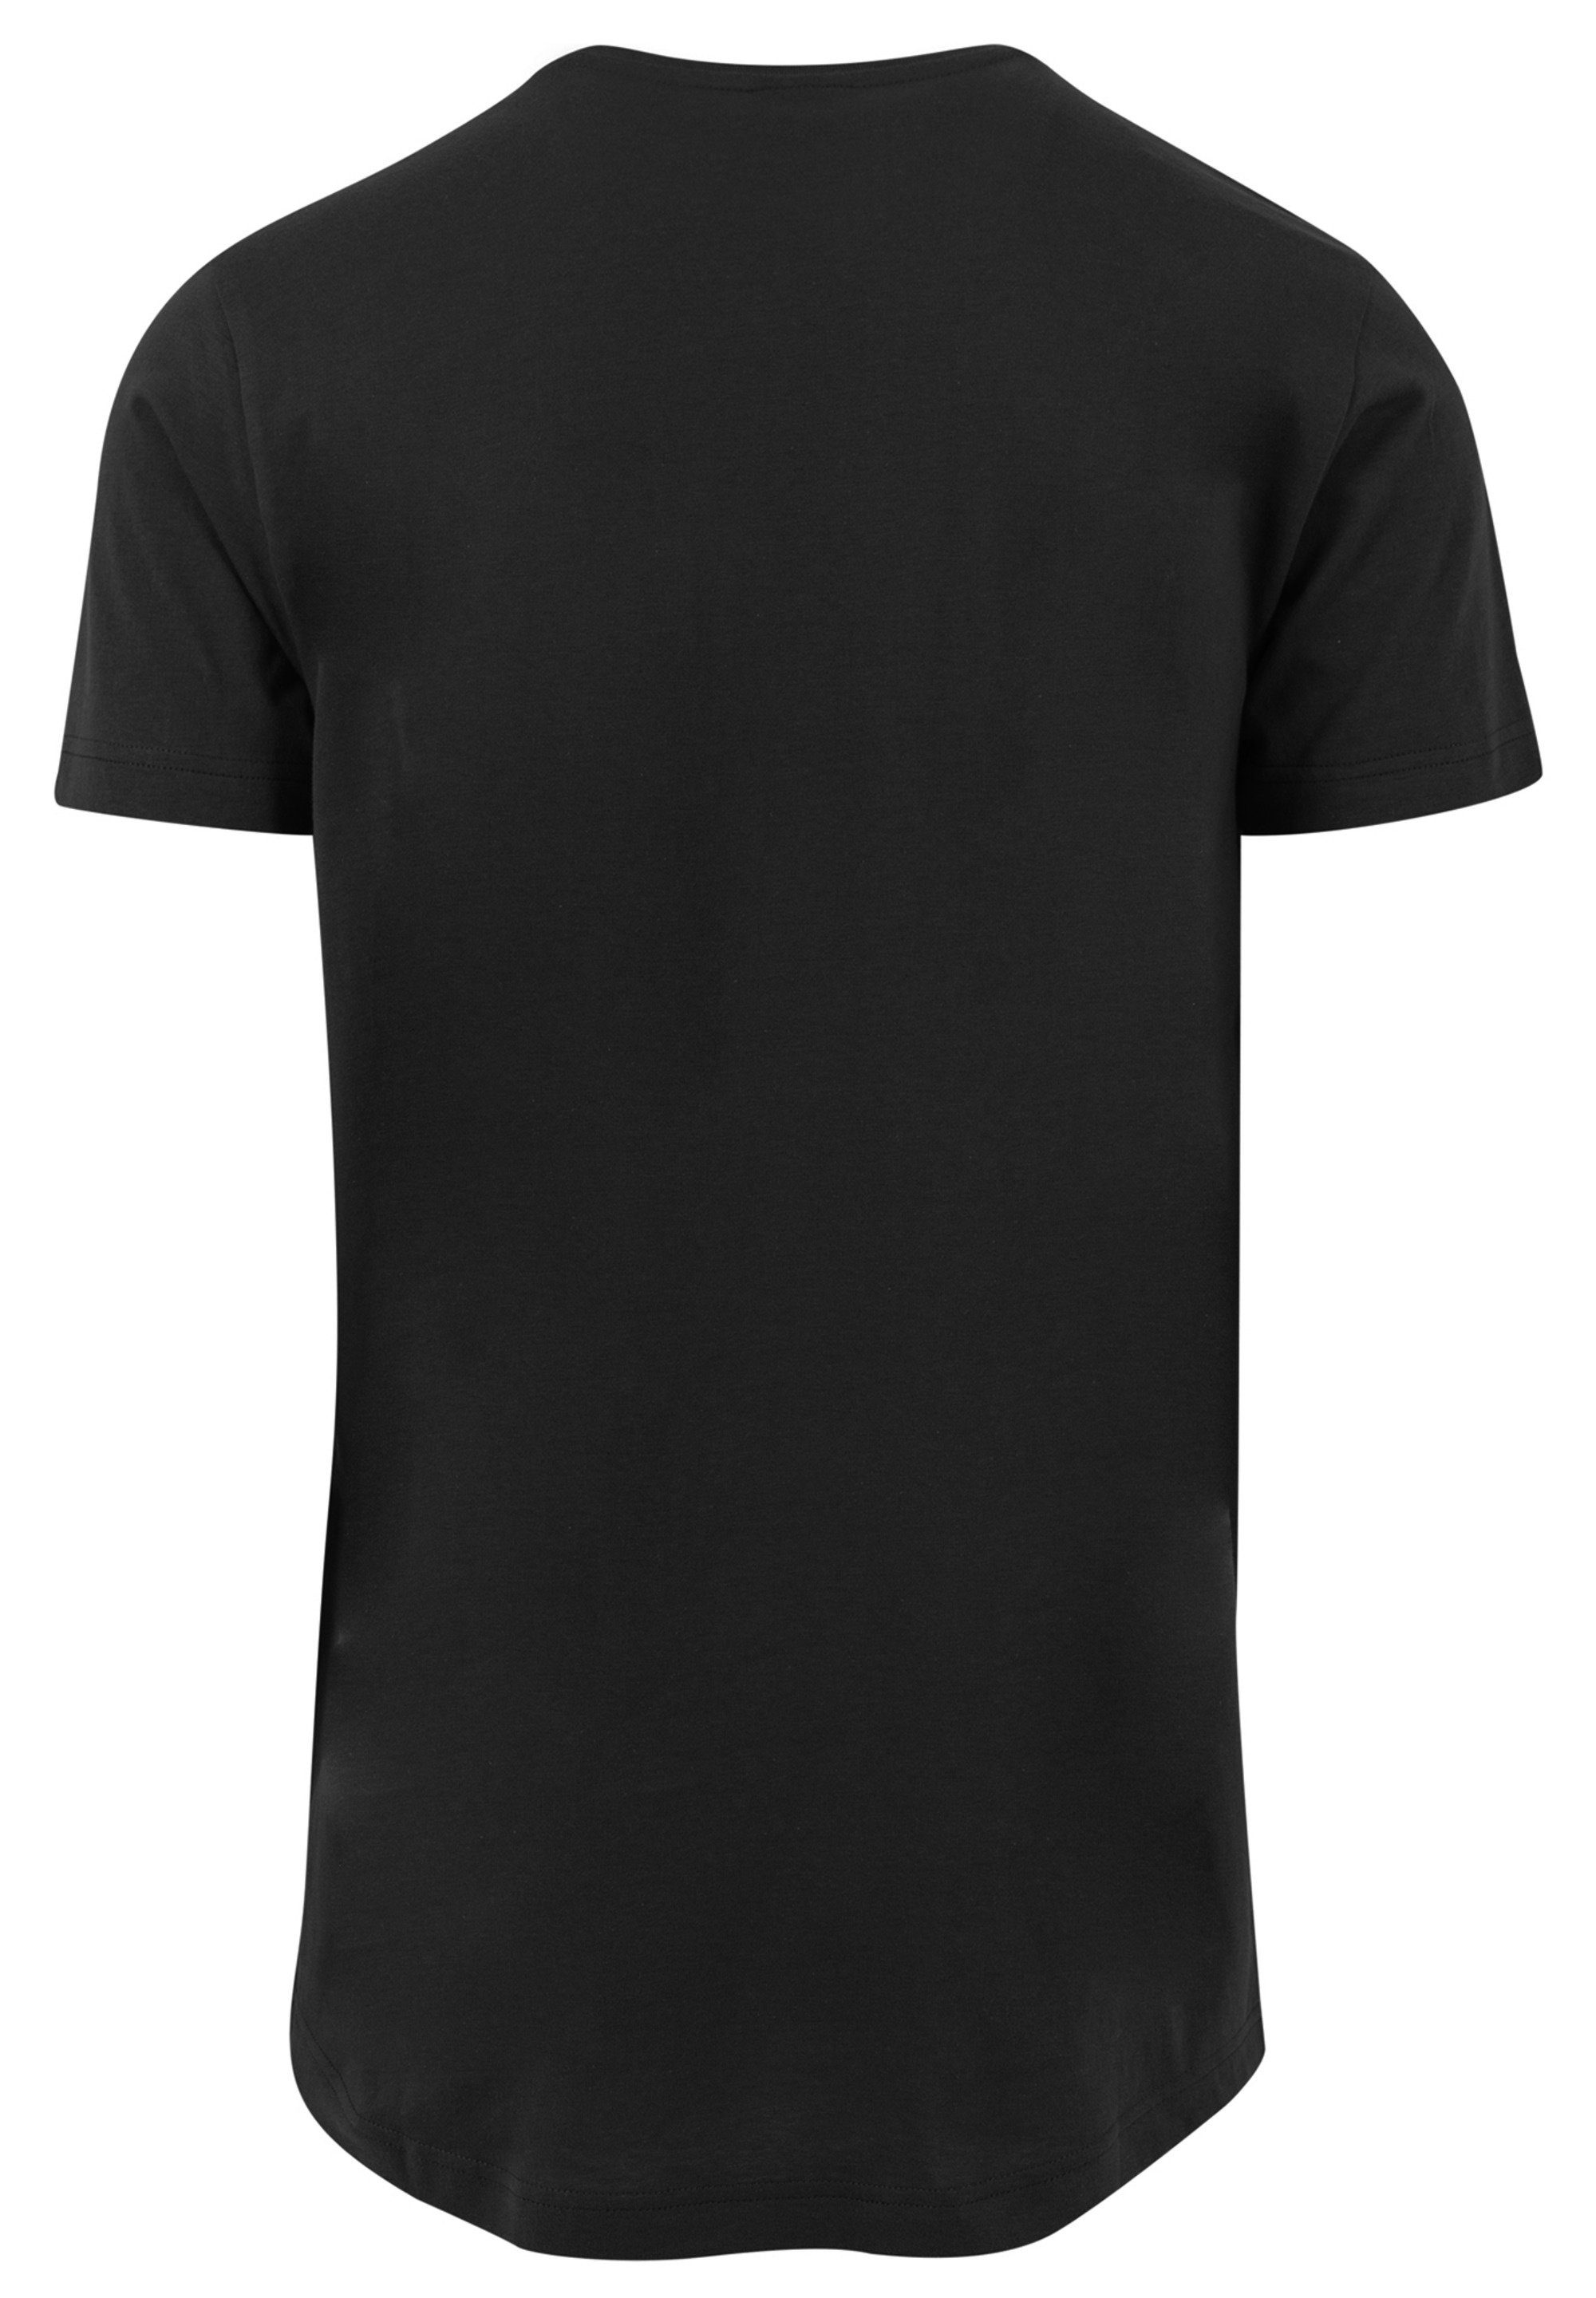 Mondlandung Merch,Lang,Longshirt,Bedruckt Black T-Shirt NASA F4NT4STIC Herren,Premium Classic